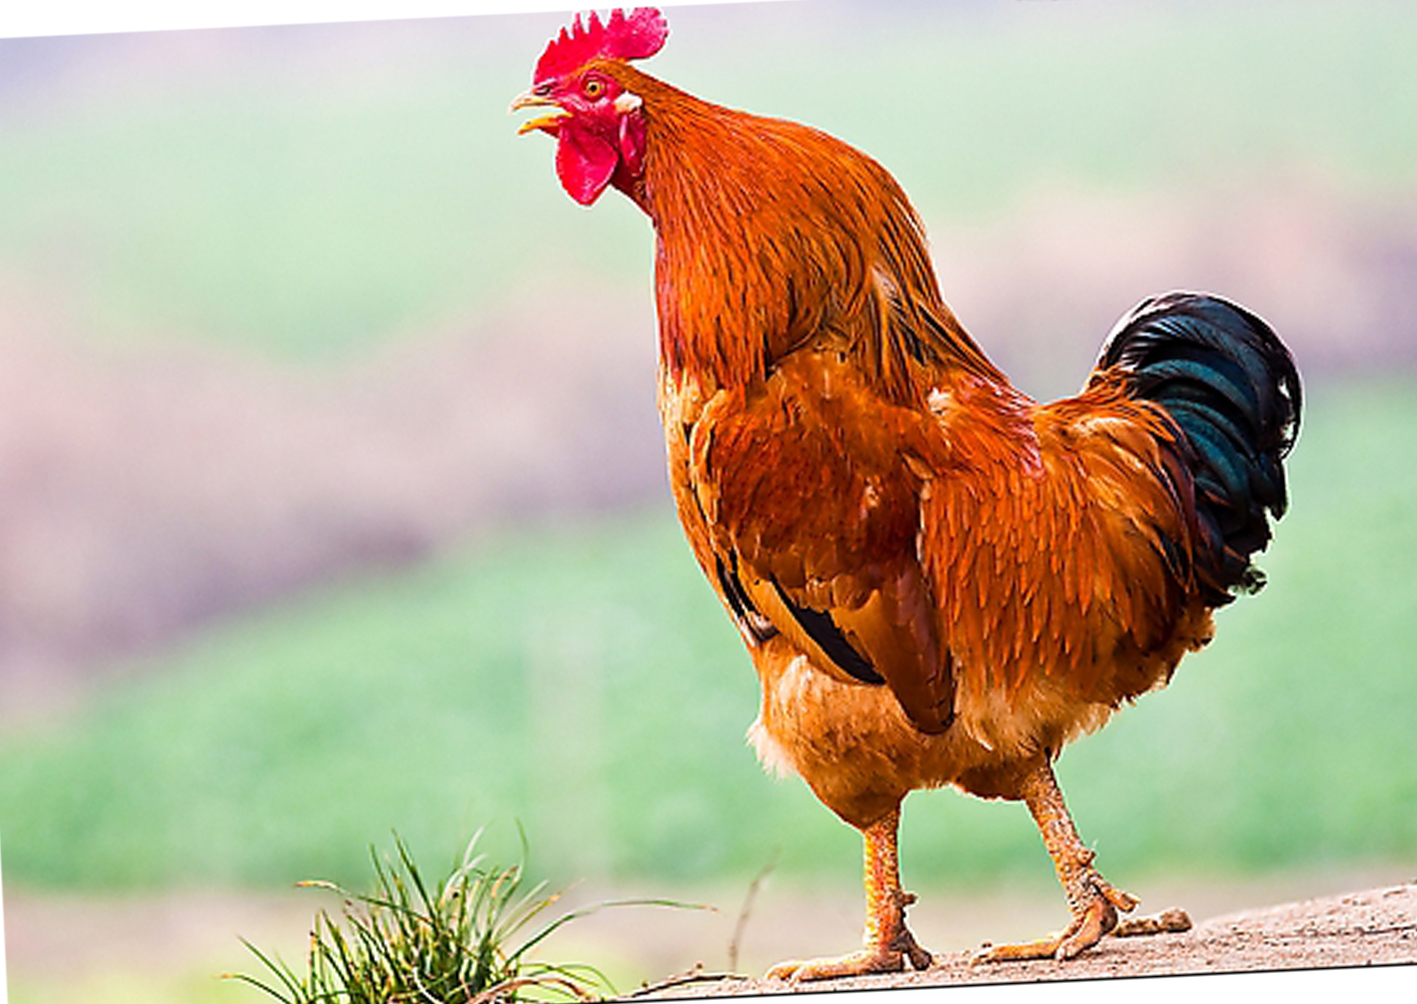 研究表明鸡更喜欢啄颜值高的人（面部对称）